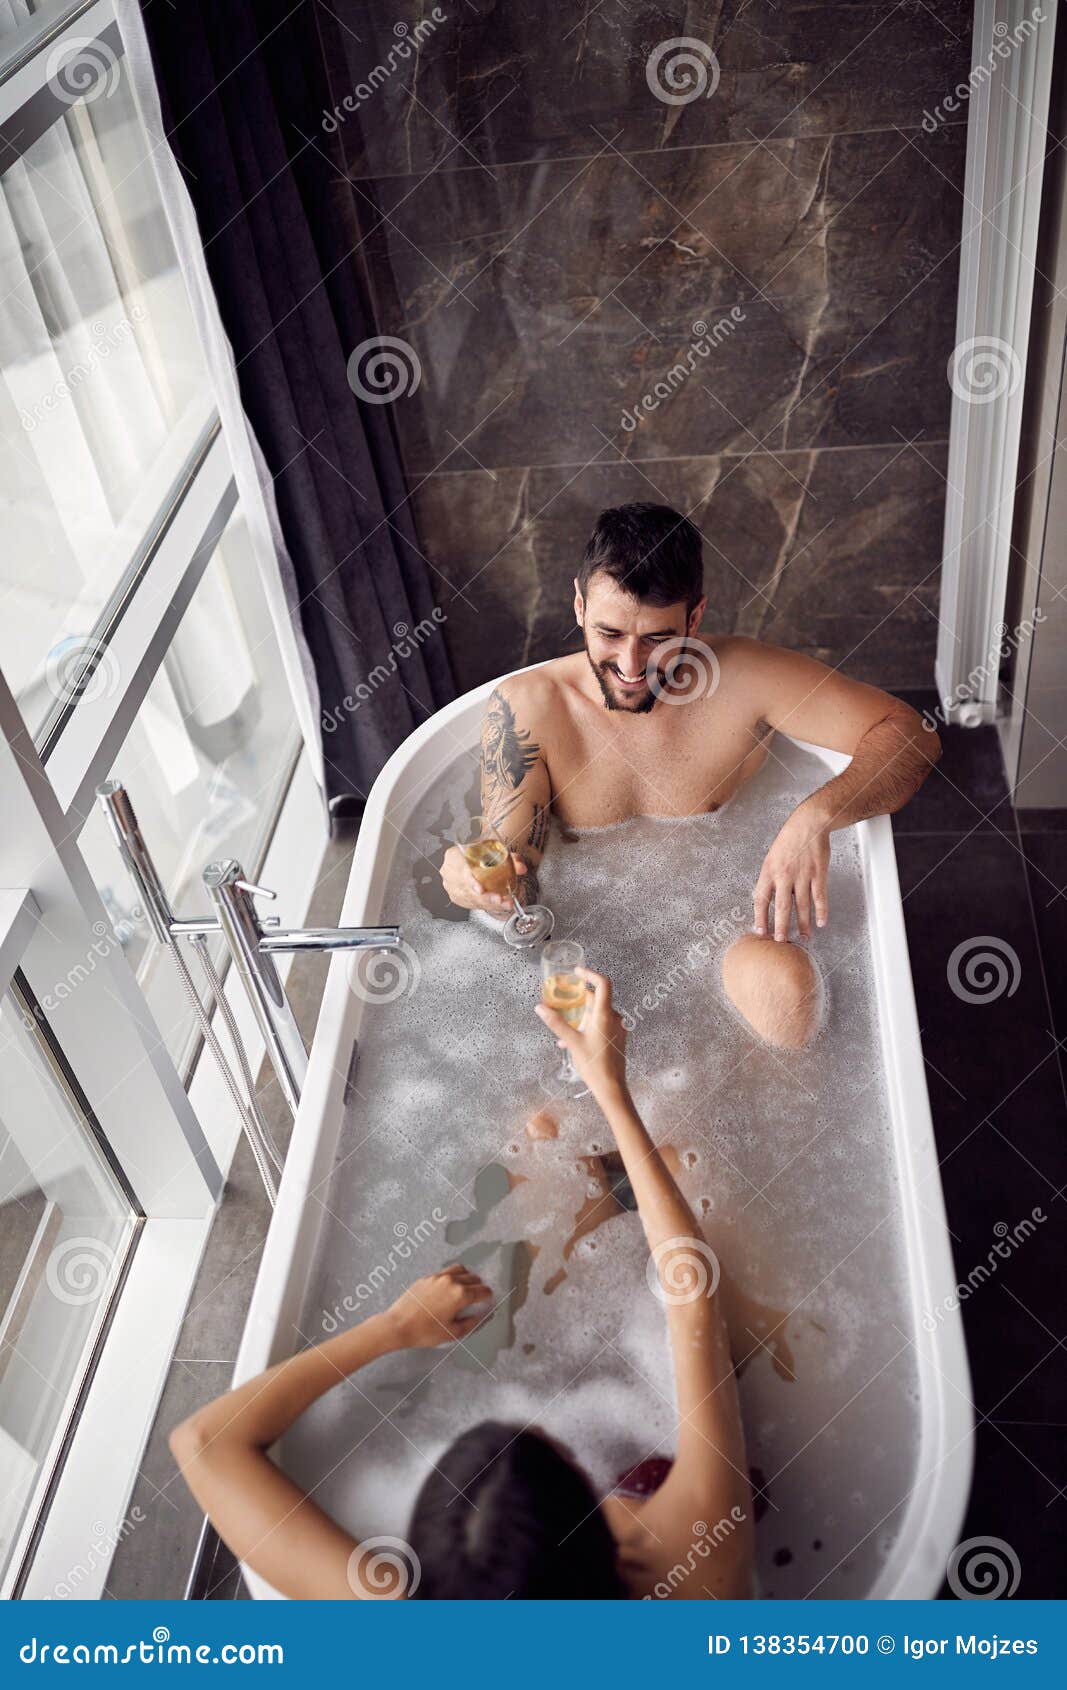 Жена с другом в ванной. Ванна с шампанским. Пара в ванной. Девушка и мужчина в ванне. Фотосессия в ванной с парнем.